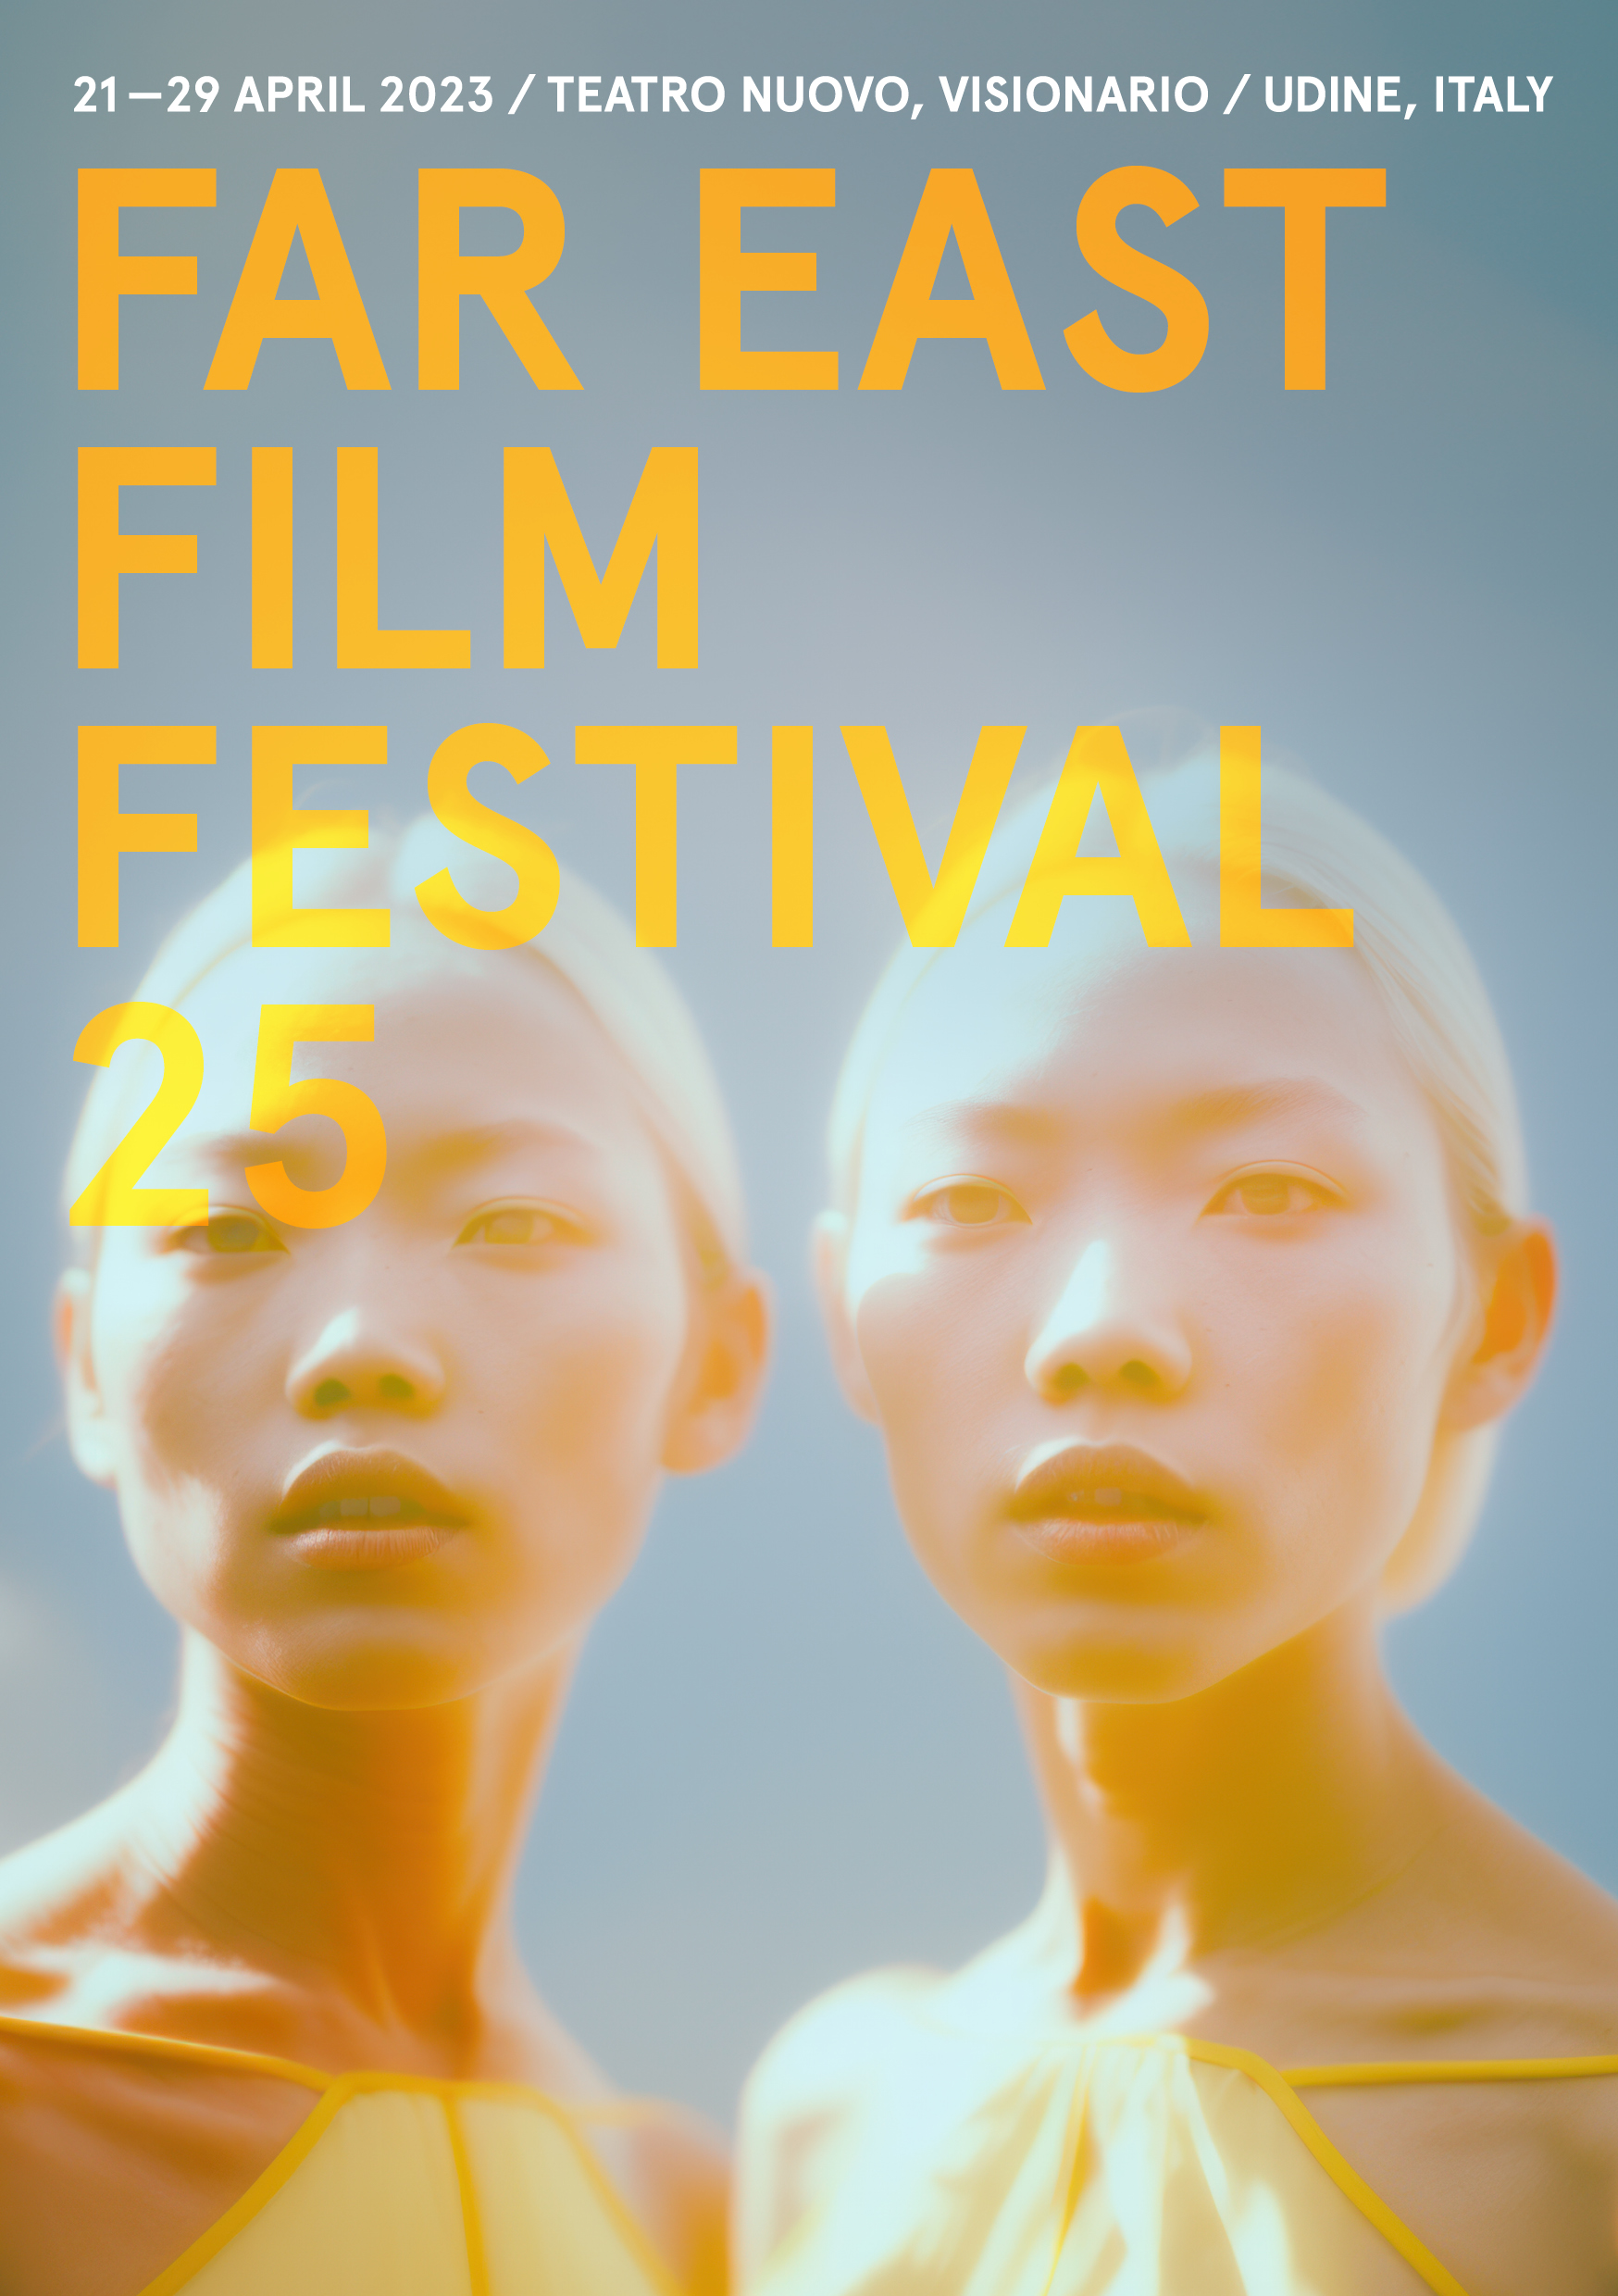 Far East Film Festival 25, la nuova immagine è un’opera d’arte creata dall’Intelligenza Artificiale